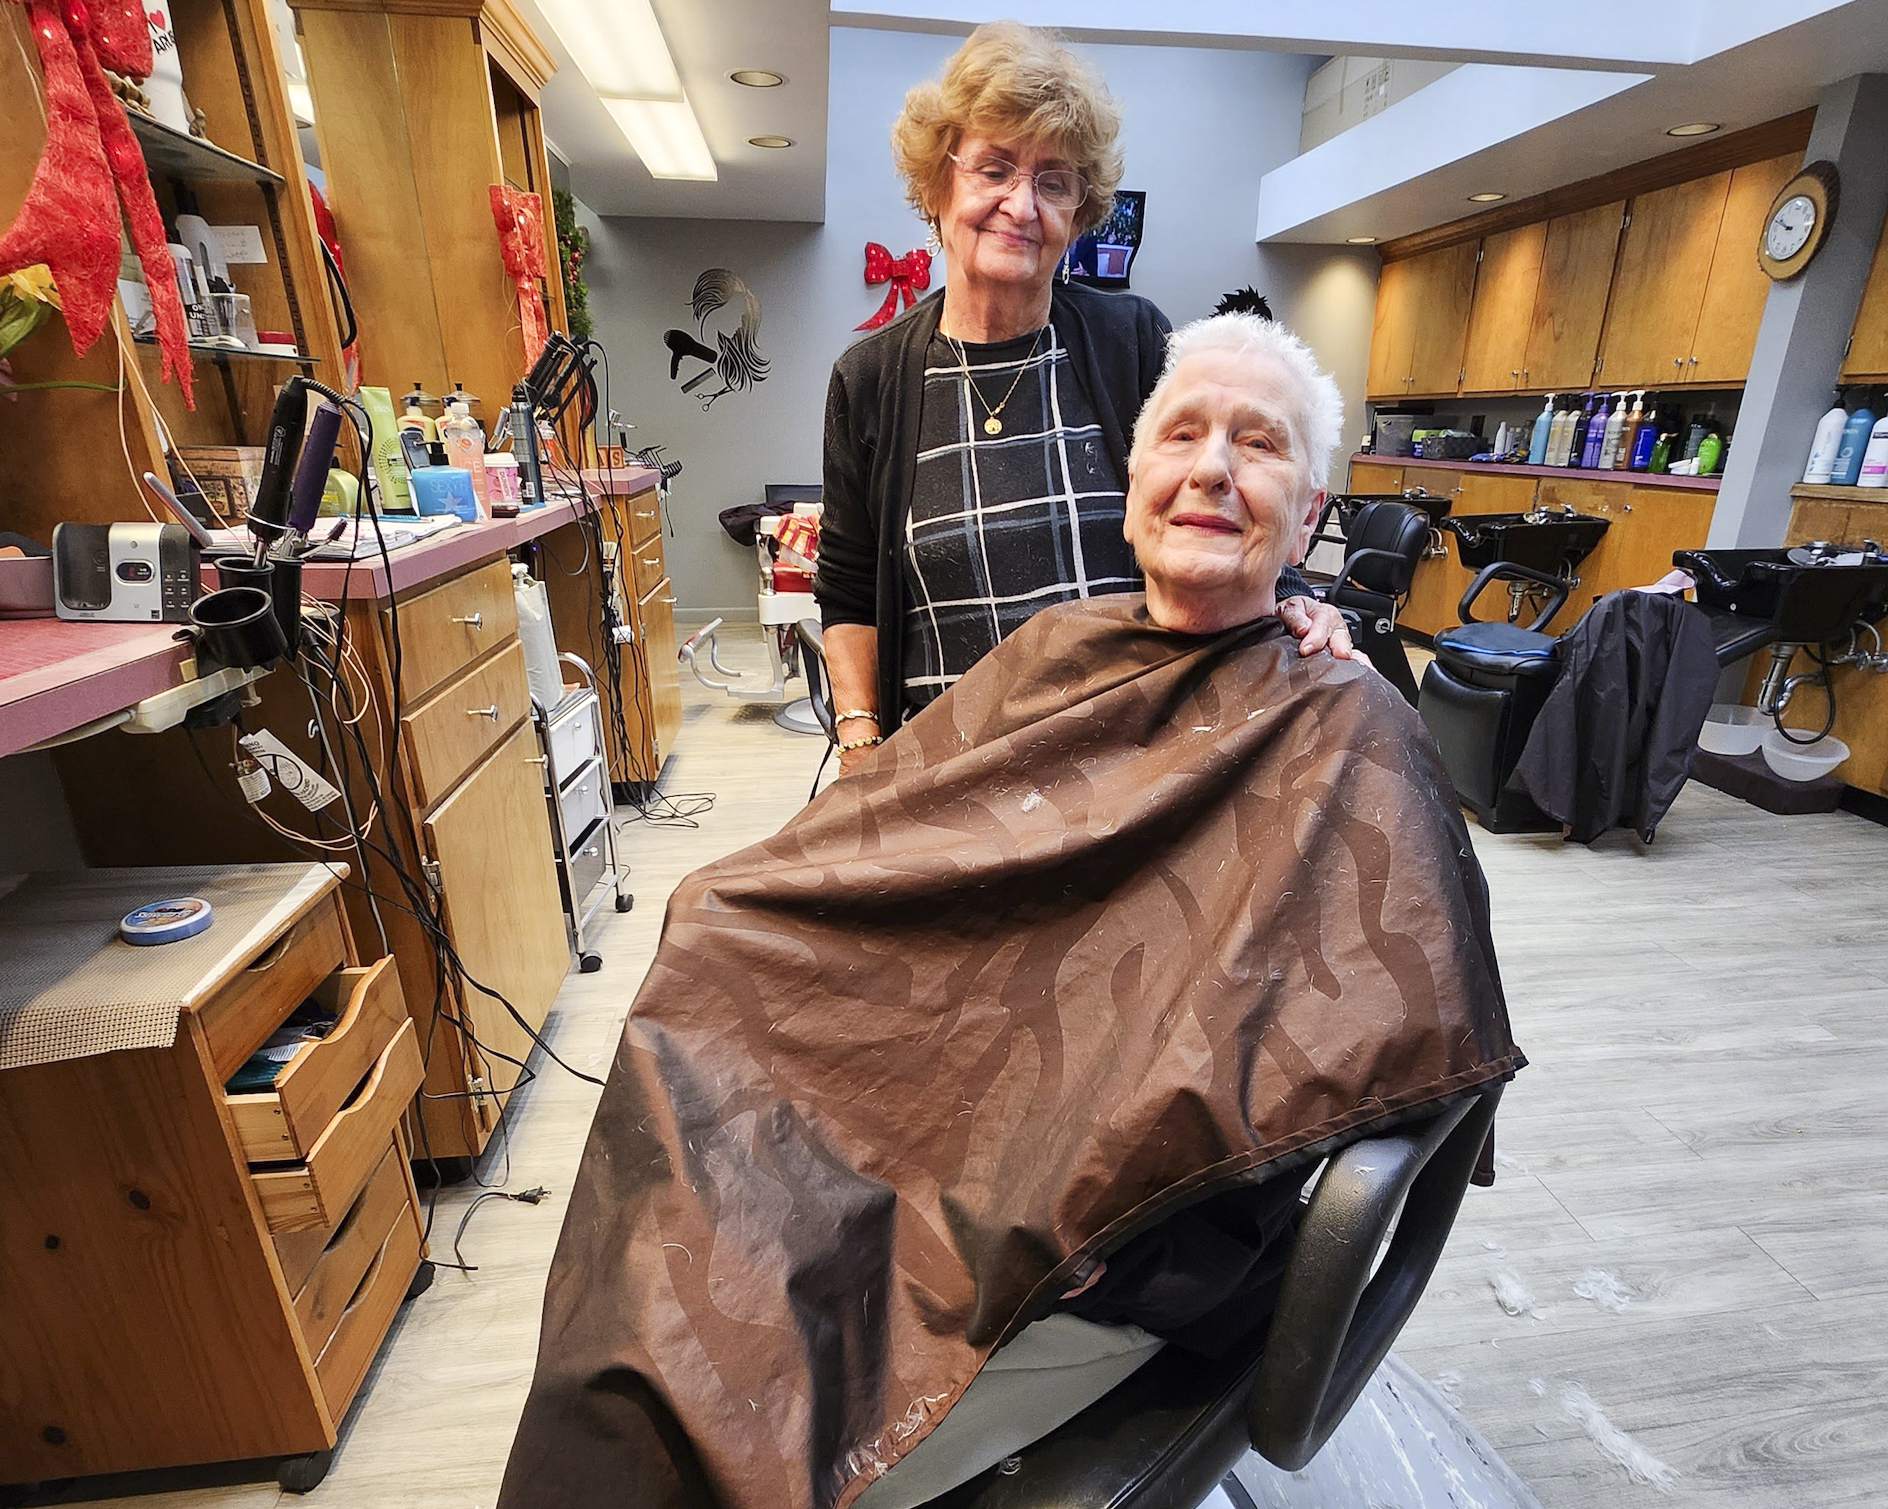 Bà Patricia Wescom, (trái) một nhà tạo mẫu tóc ở Barre, Vermont, và khách hàng Janice Boudreau của bà thảo luận về chính trị và năm sắp đến, hôm 12/12/2023. (Ảnh: Allan Stein/The Epoch Times)